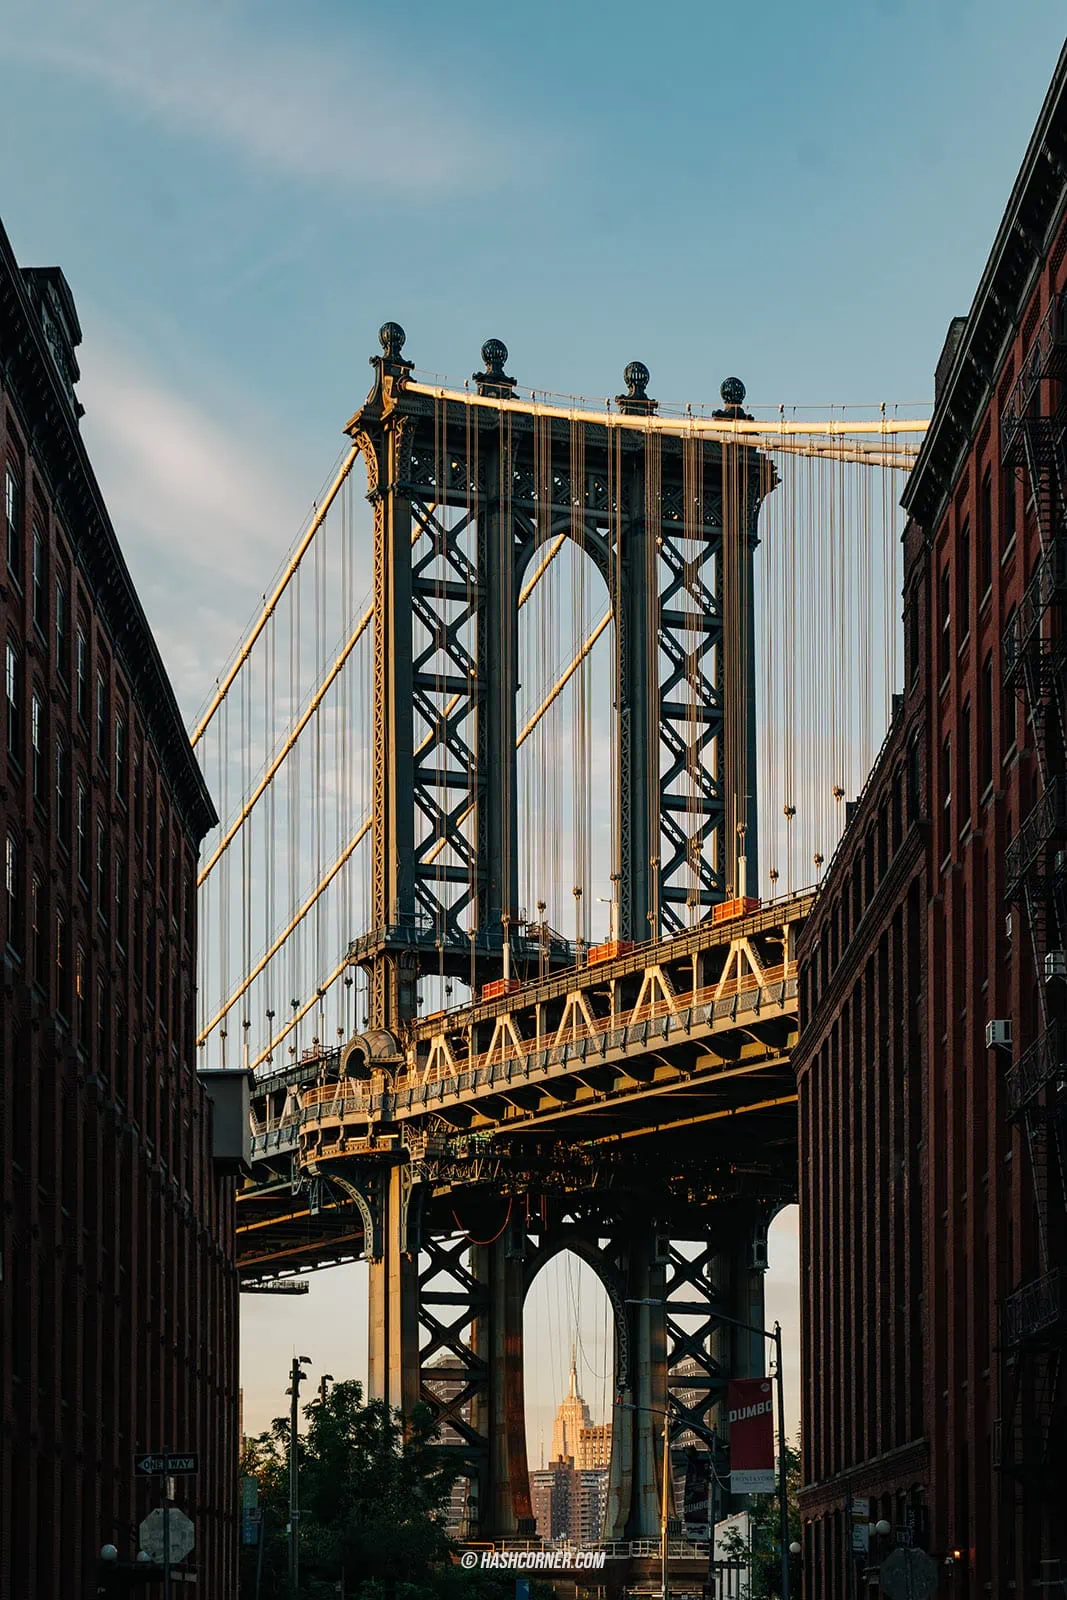 รีวิว สะพานบรูคลิน (Brooklyn Bridge) x นิวยอร์ก เดินเที่ยวถ่ายรูปสุดชิค